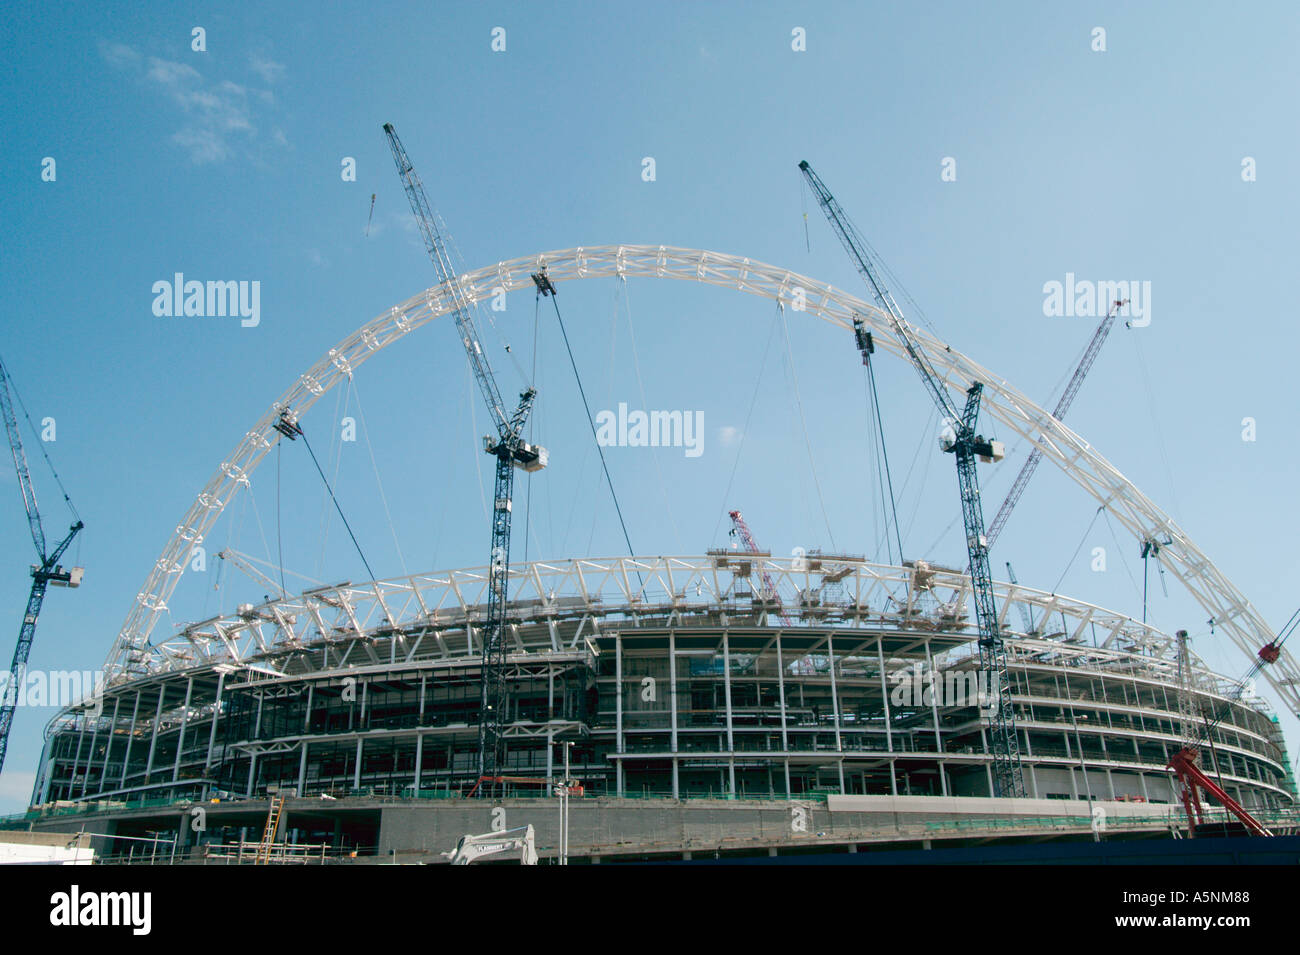 Le nouveau stade de Wembley et arch en construction à London UK Banque D'Images